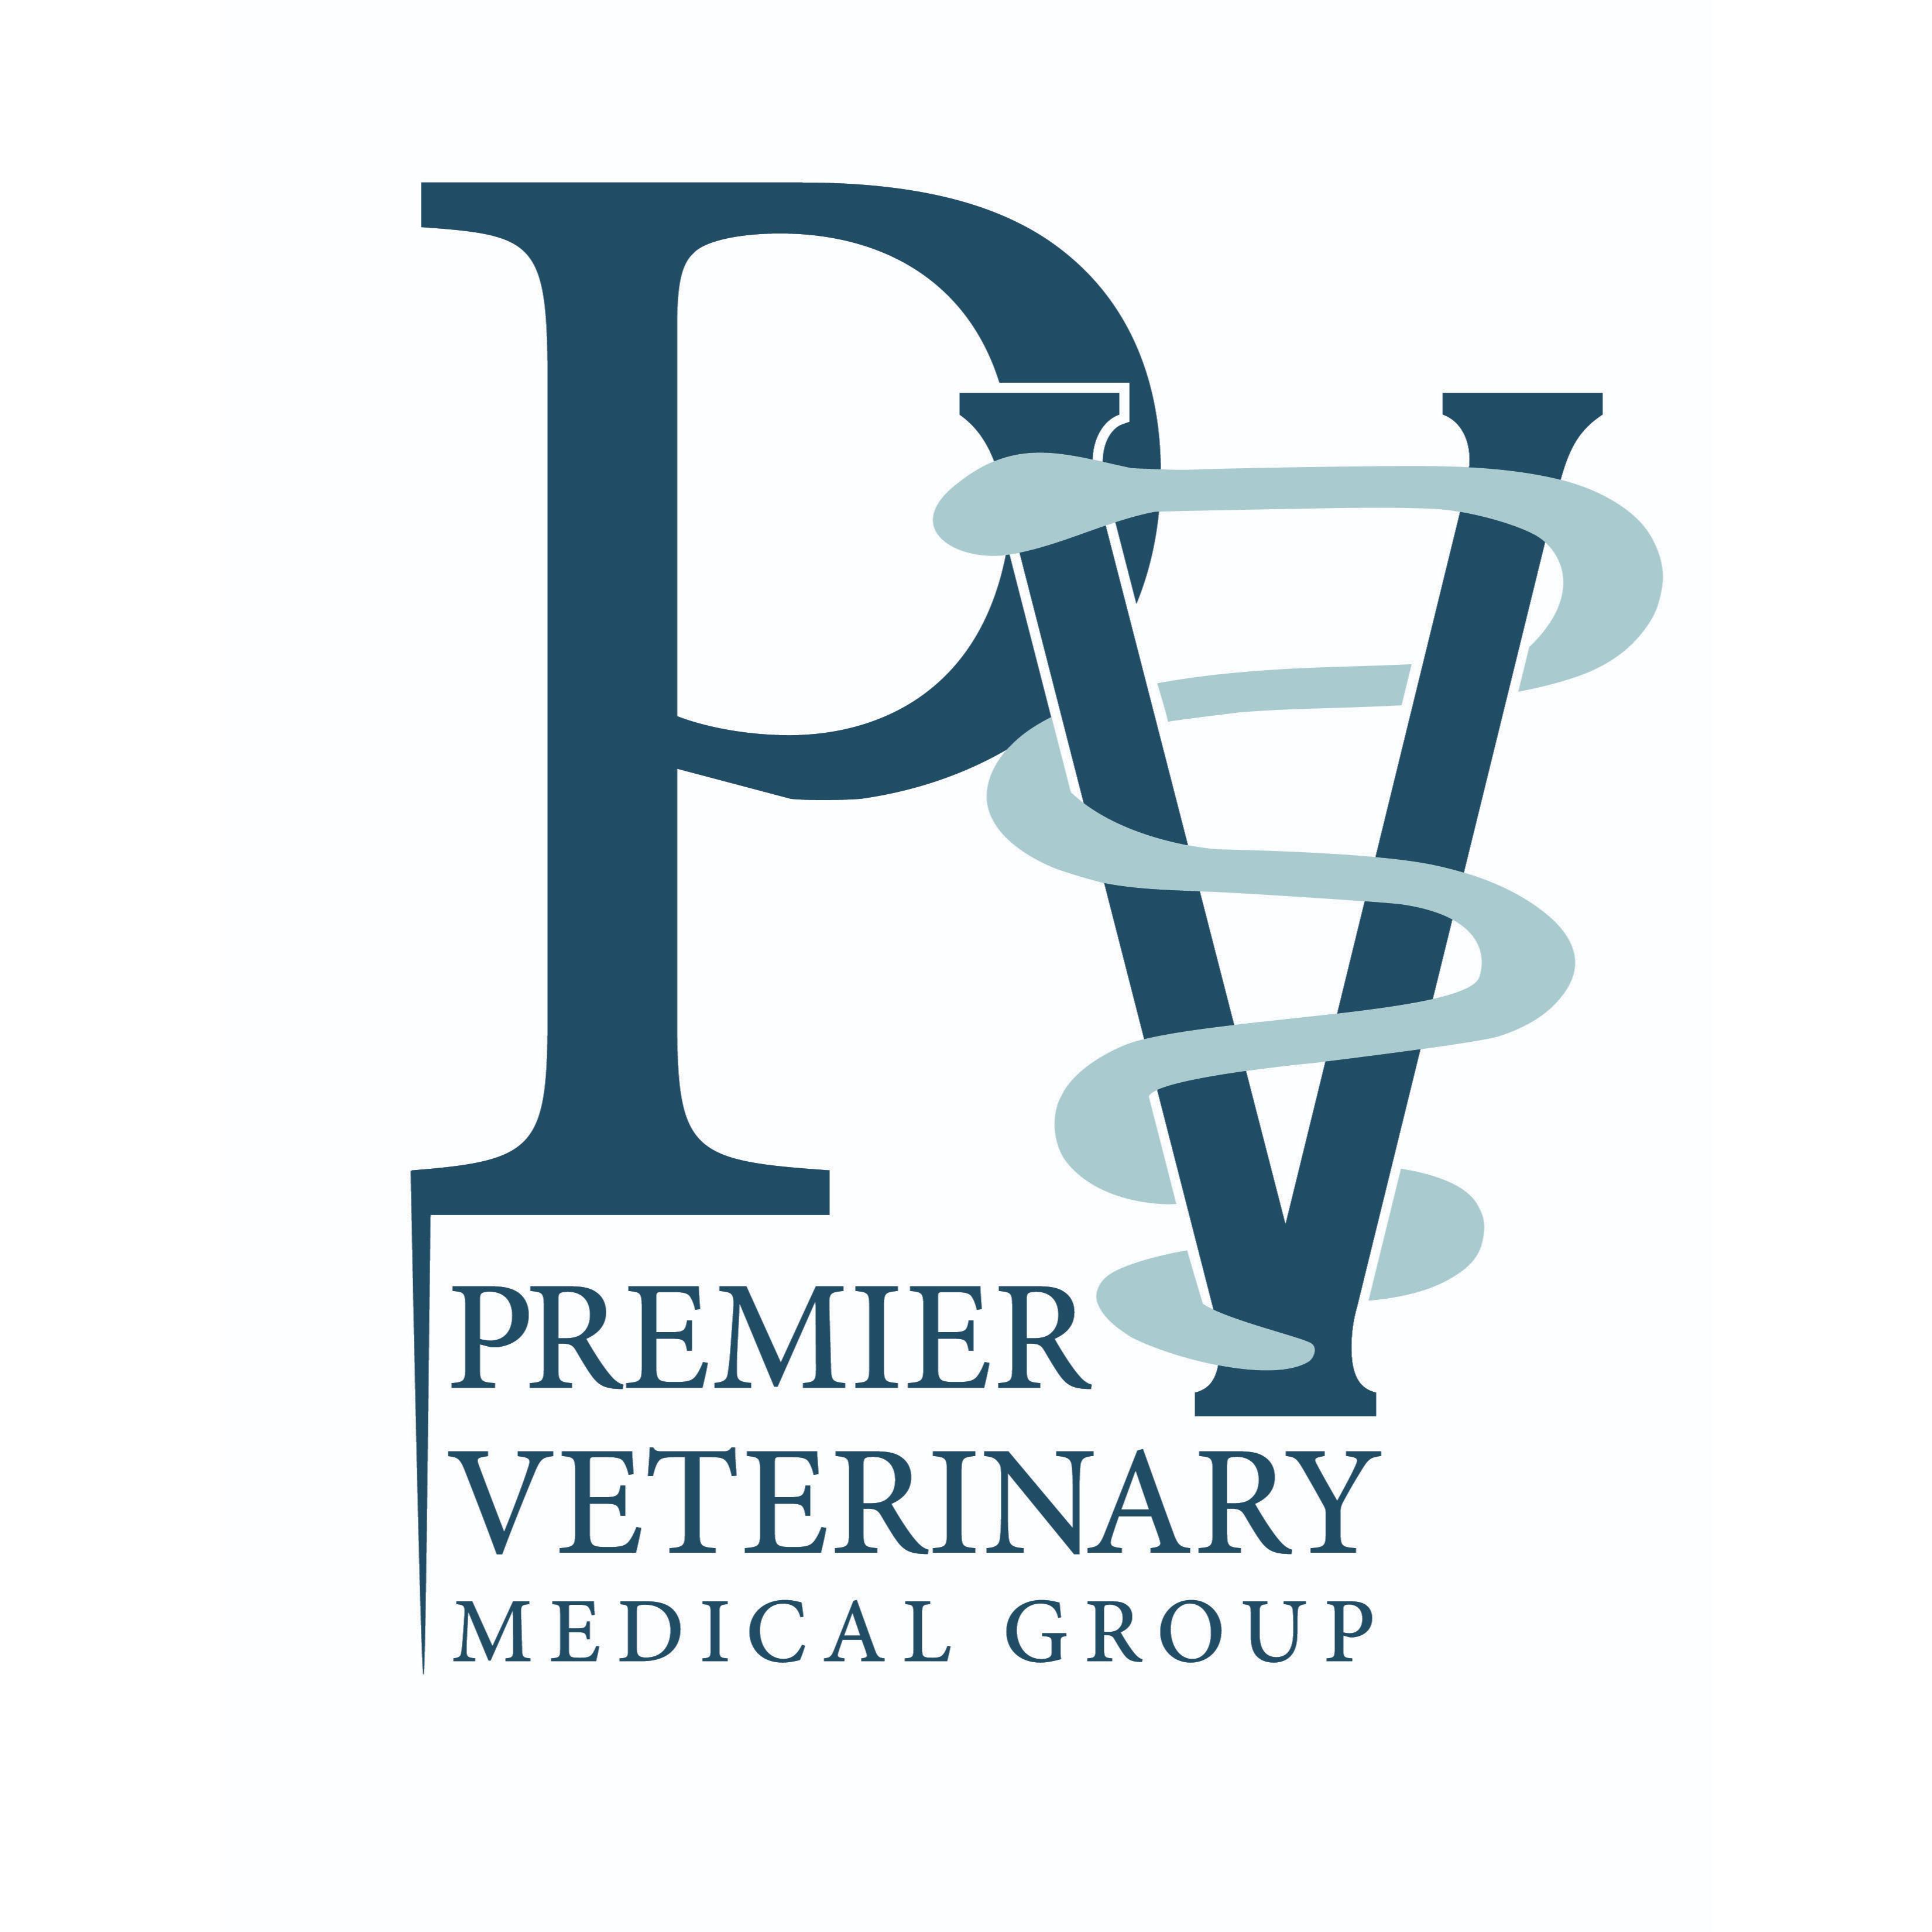 Premier Veterinary Medical Group - Mineola - Mineola, NY 11501 - (516)294-6680 | ShowMeLocal.com